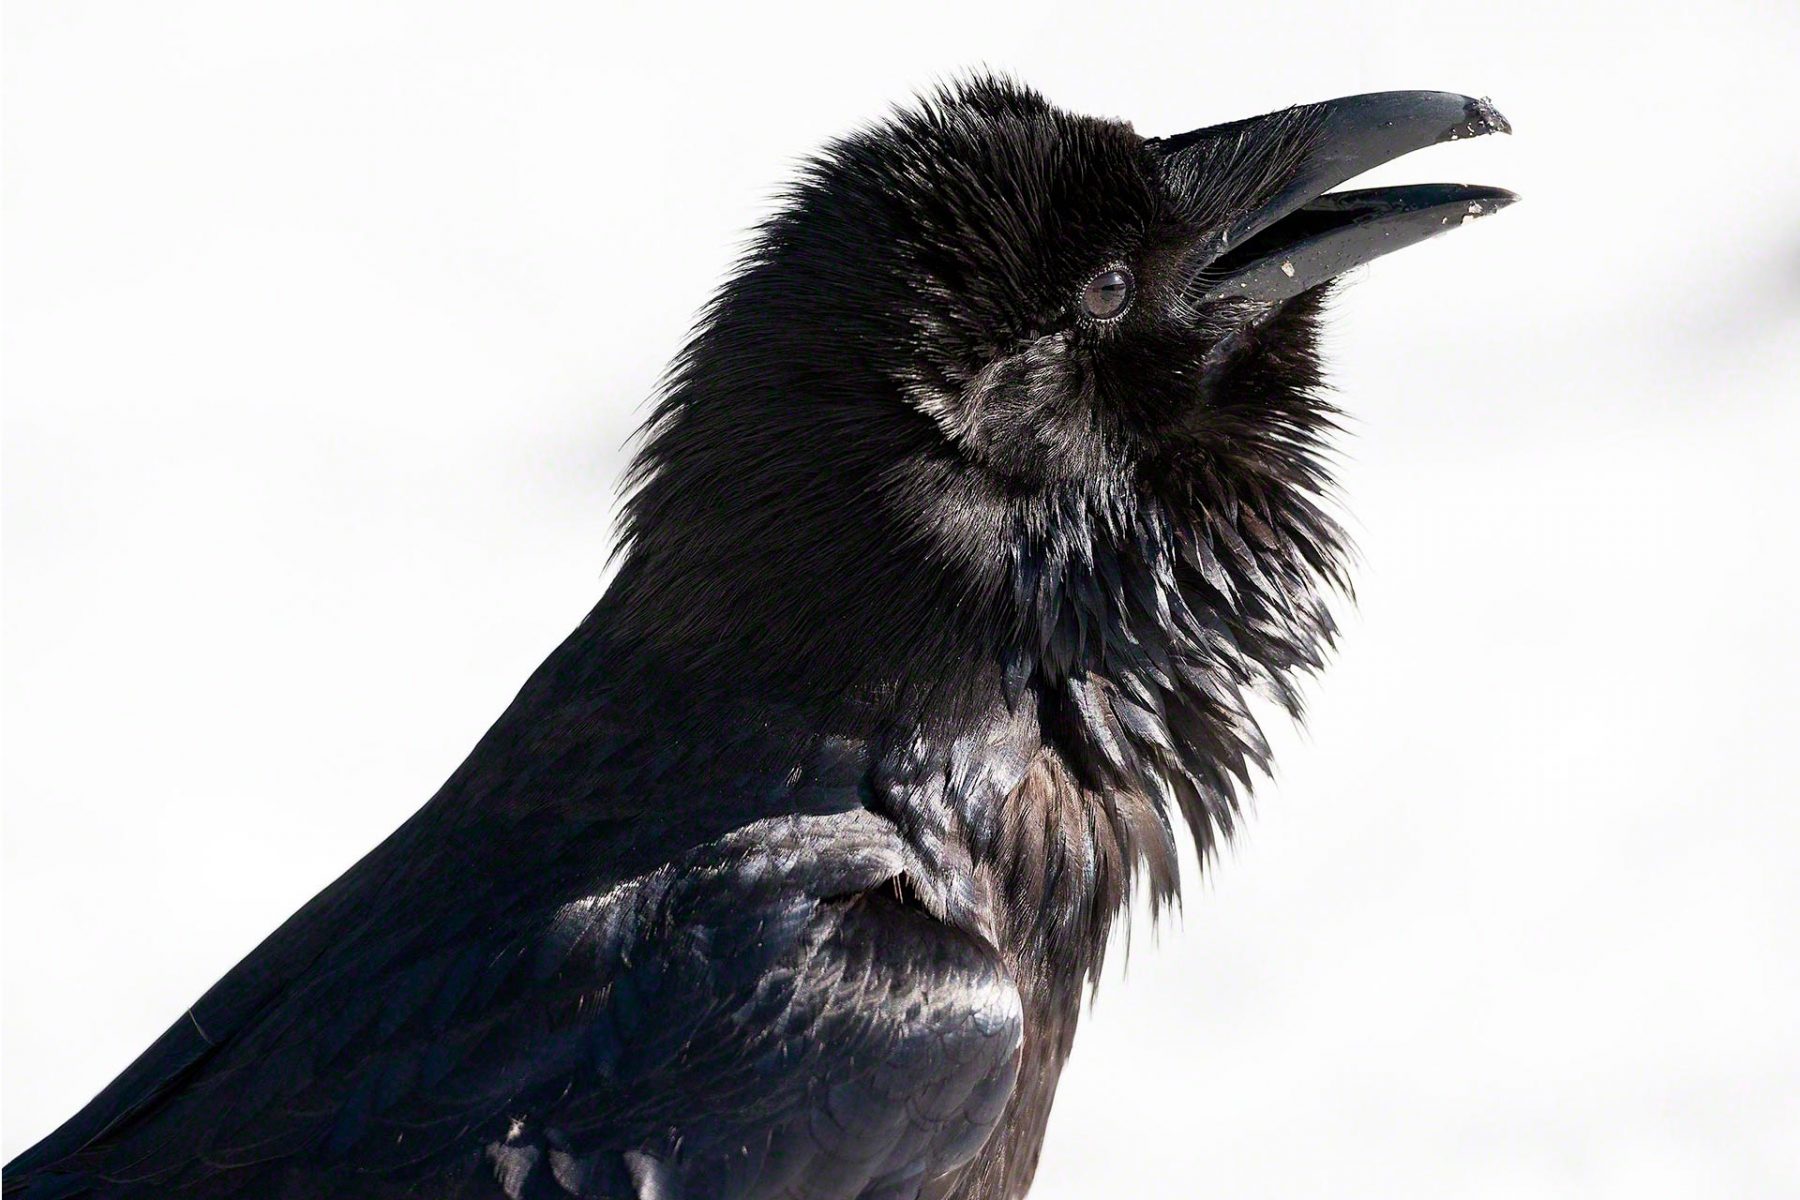 Raven-photograph-portrait-Rooster